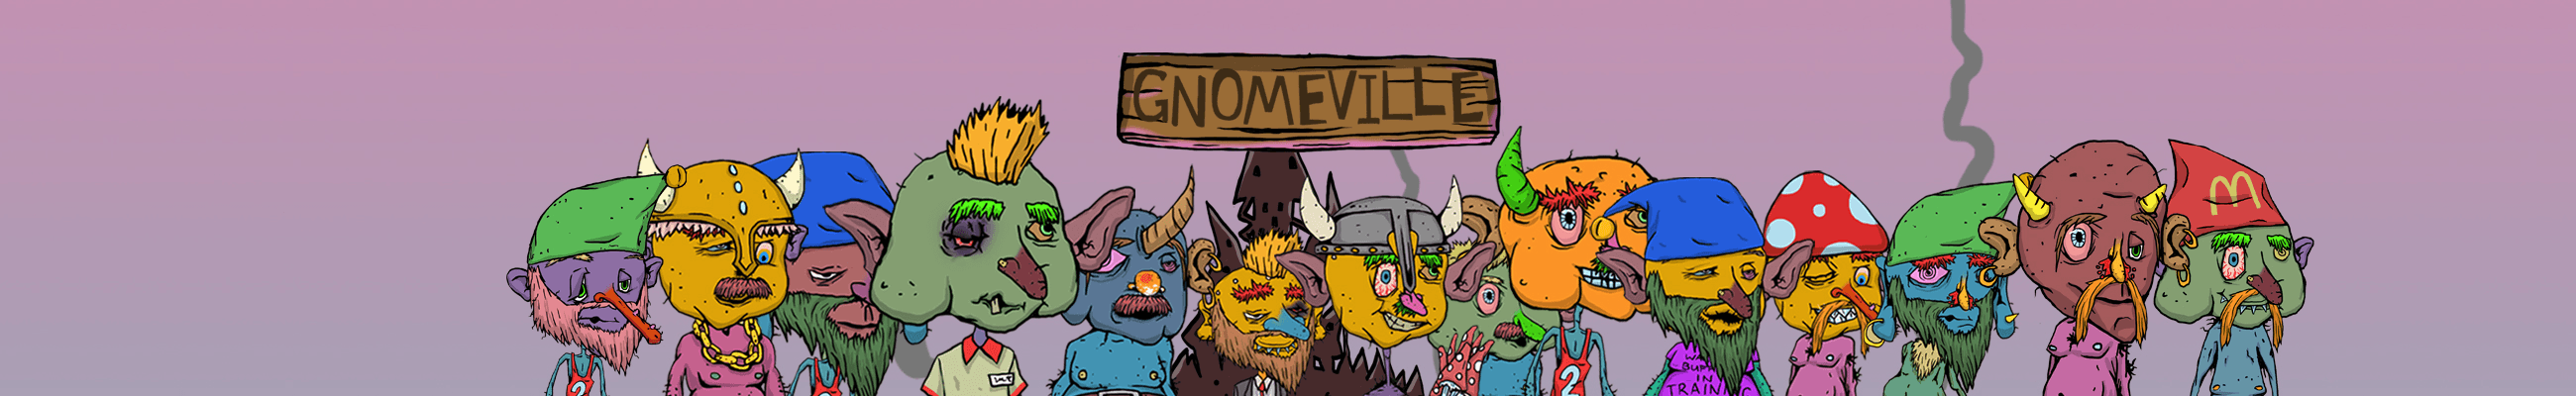 Gnomeville